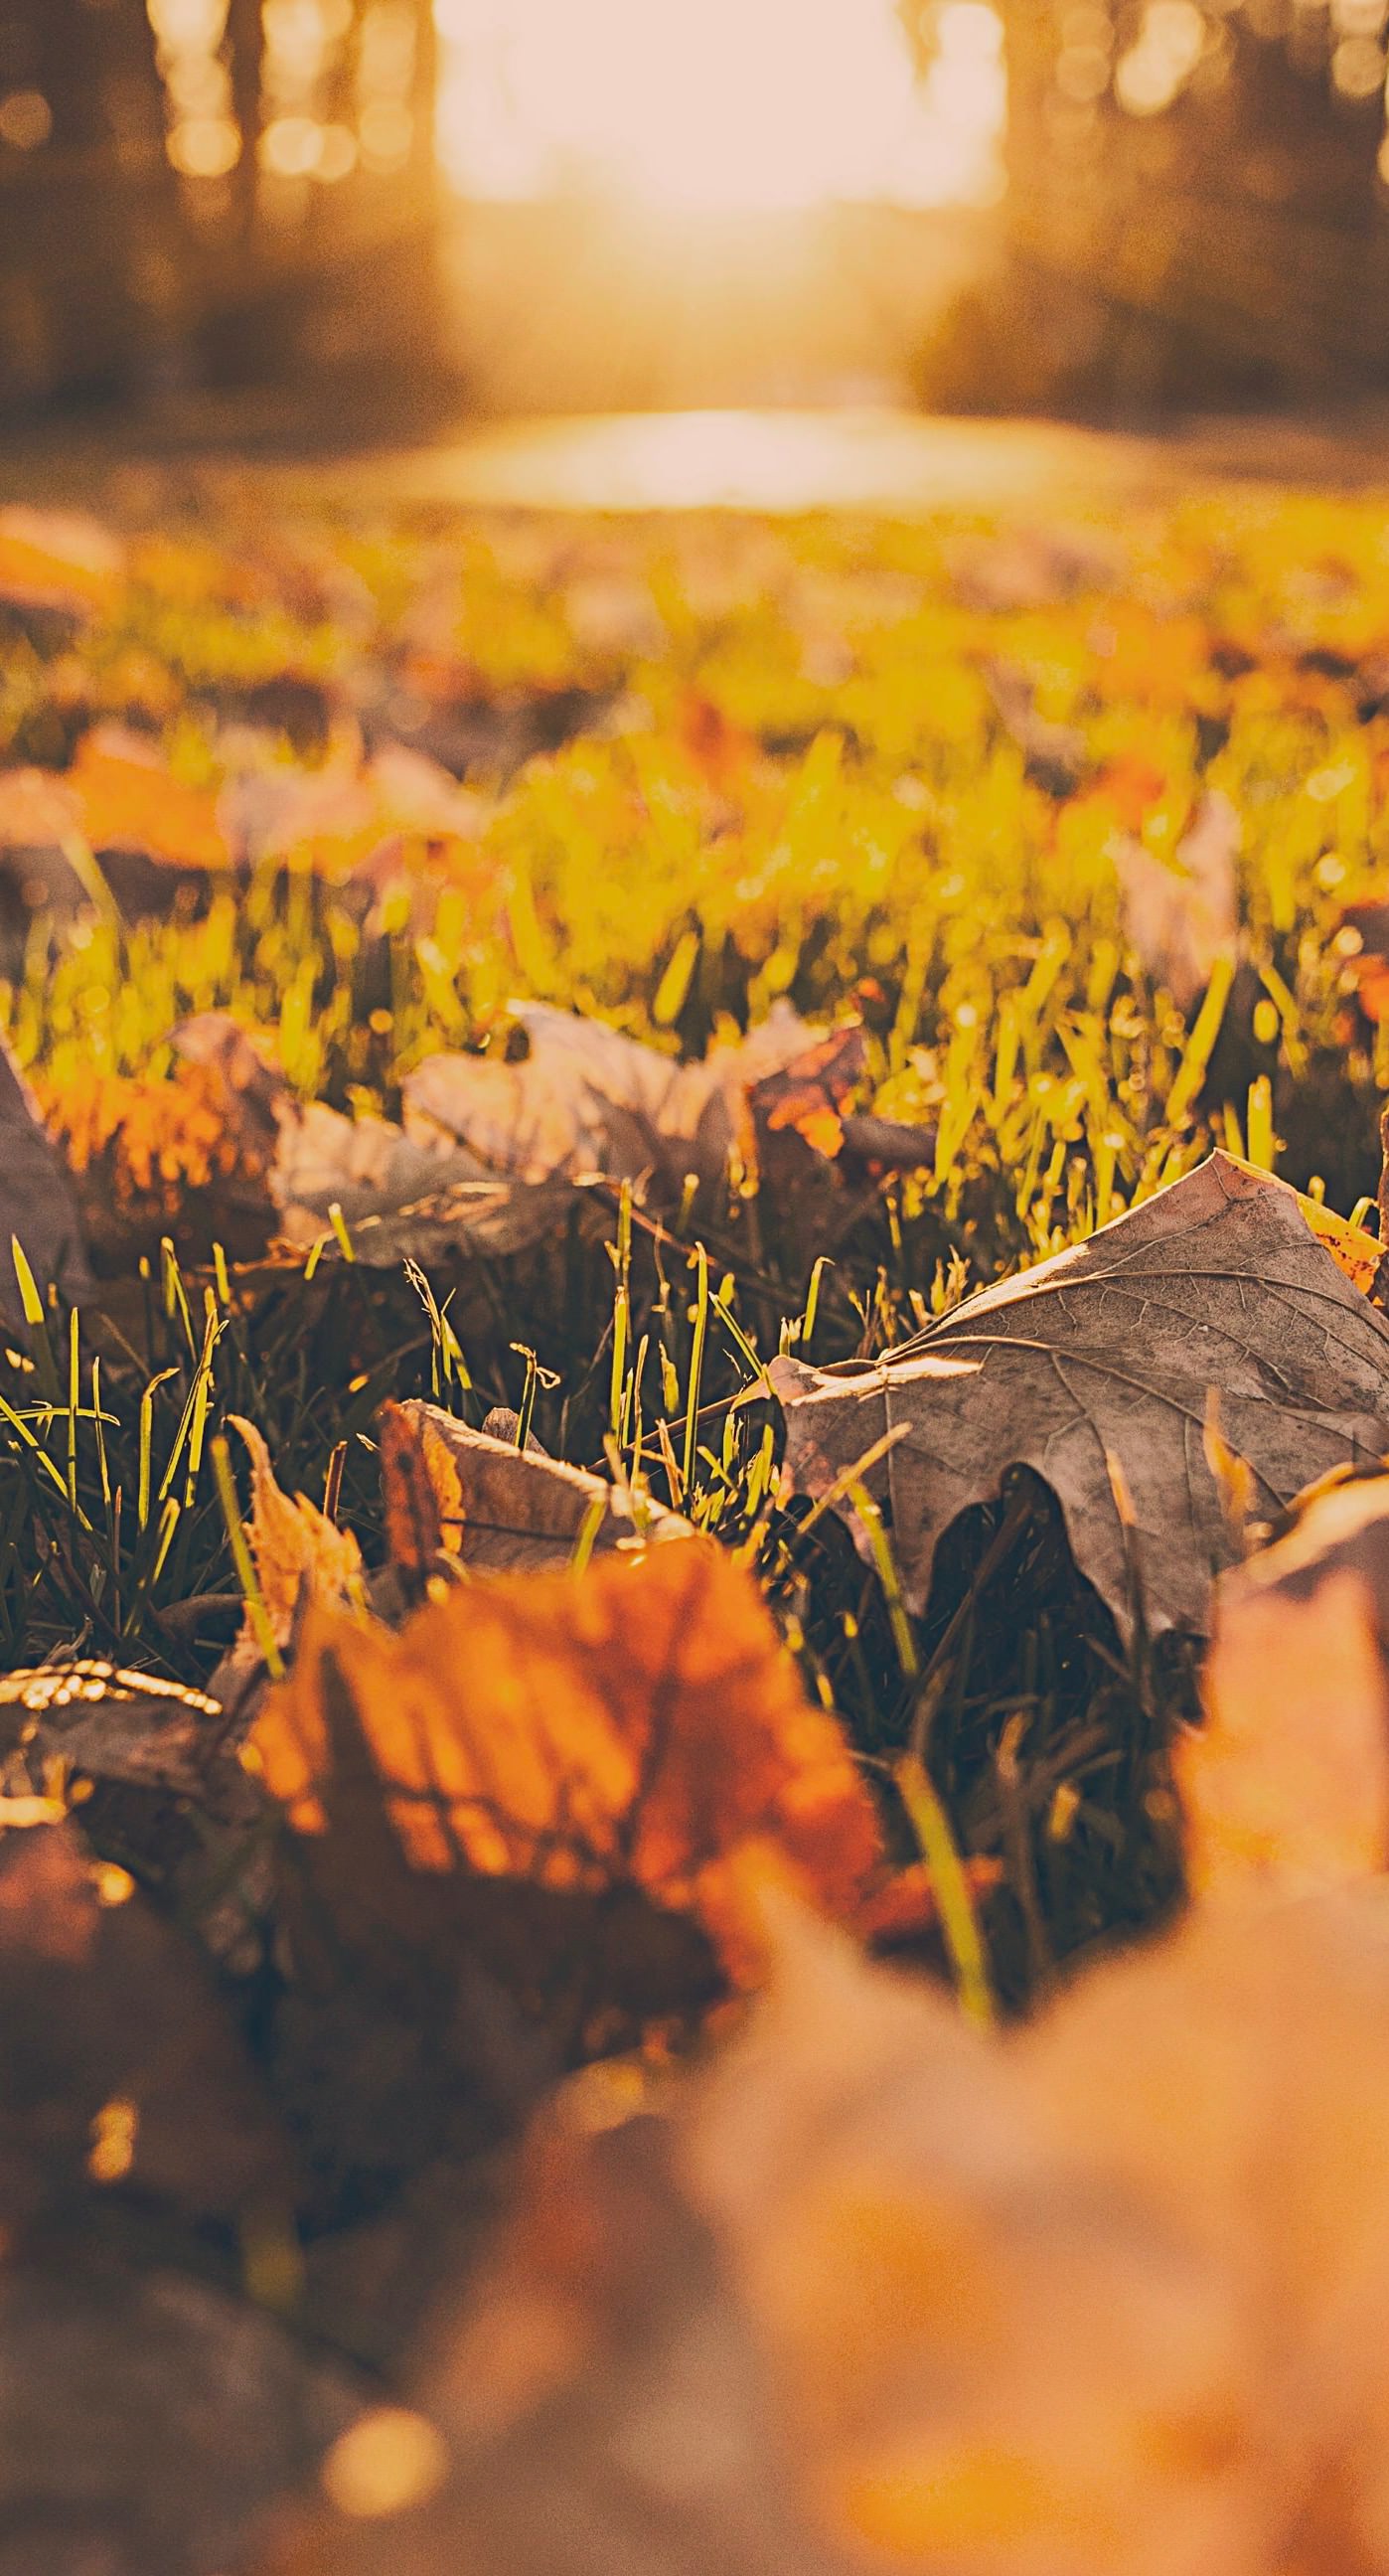 Lá khô tuy đã rơi xuống đất nhưng khiến cho không gian xung quanh trở nên rực rỡ và rực rỡ hơn. Hãy xem hình ảnh liên quan đến lá khô và tận hưởng nét đẹp tự nhiên của mùa thu.